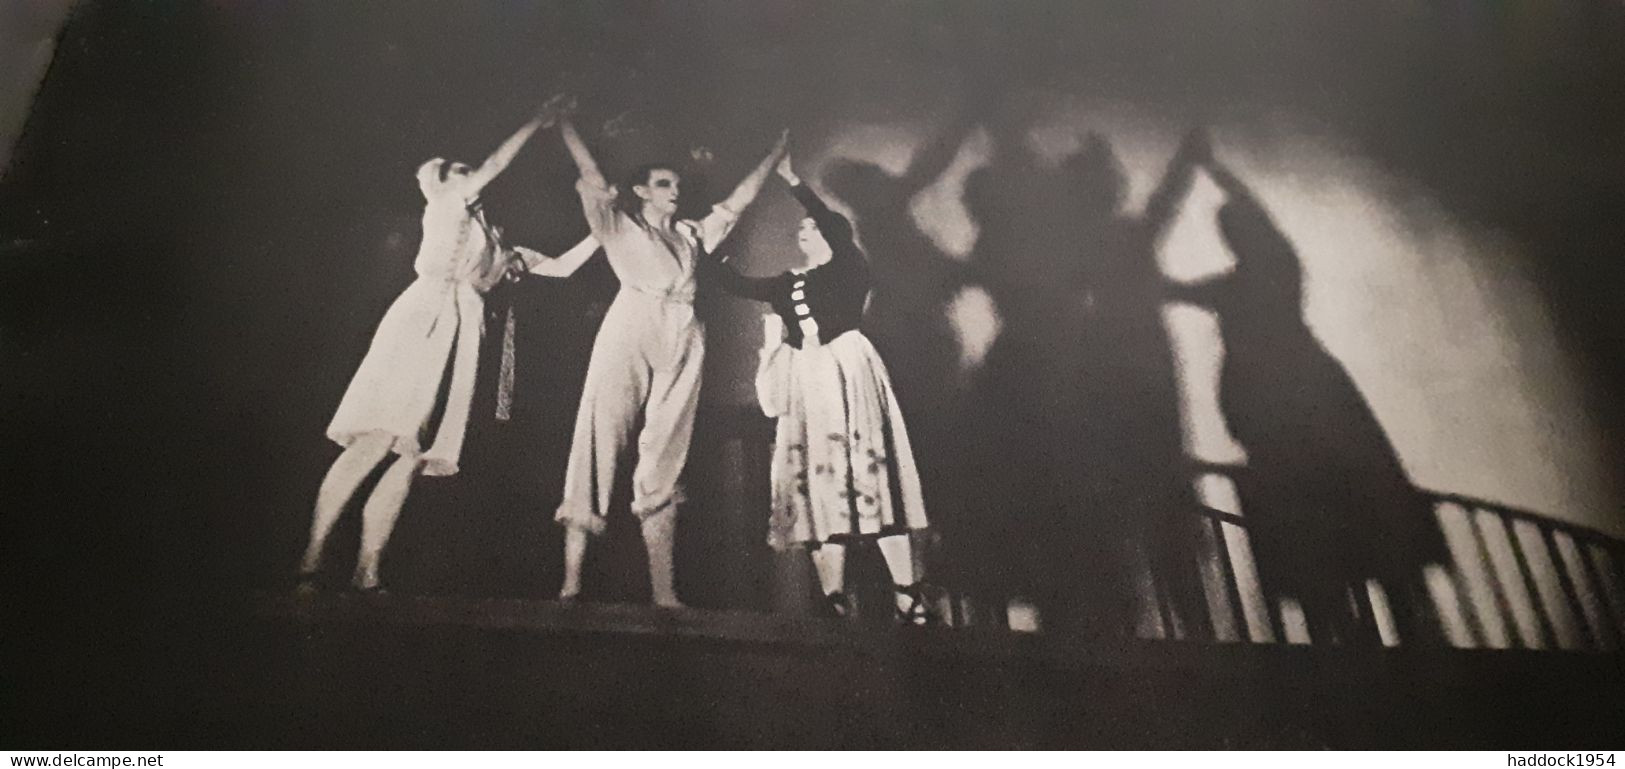 Sadler's wells ballet at covent garden Merlyn SEVERN john lane 1947